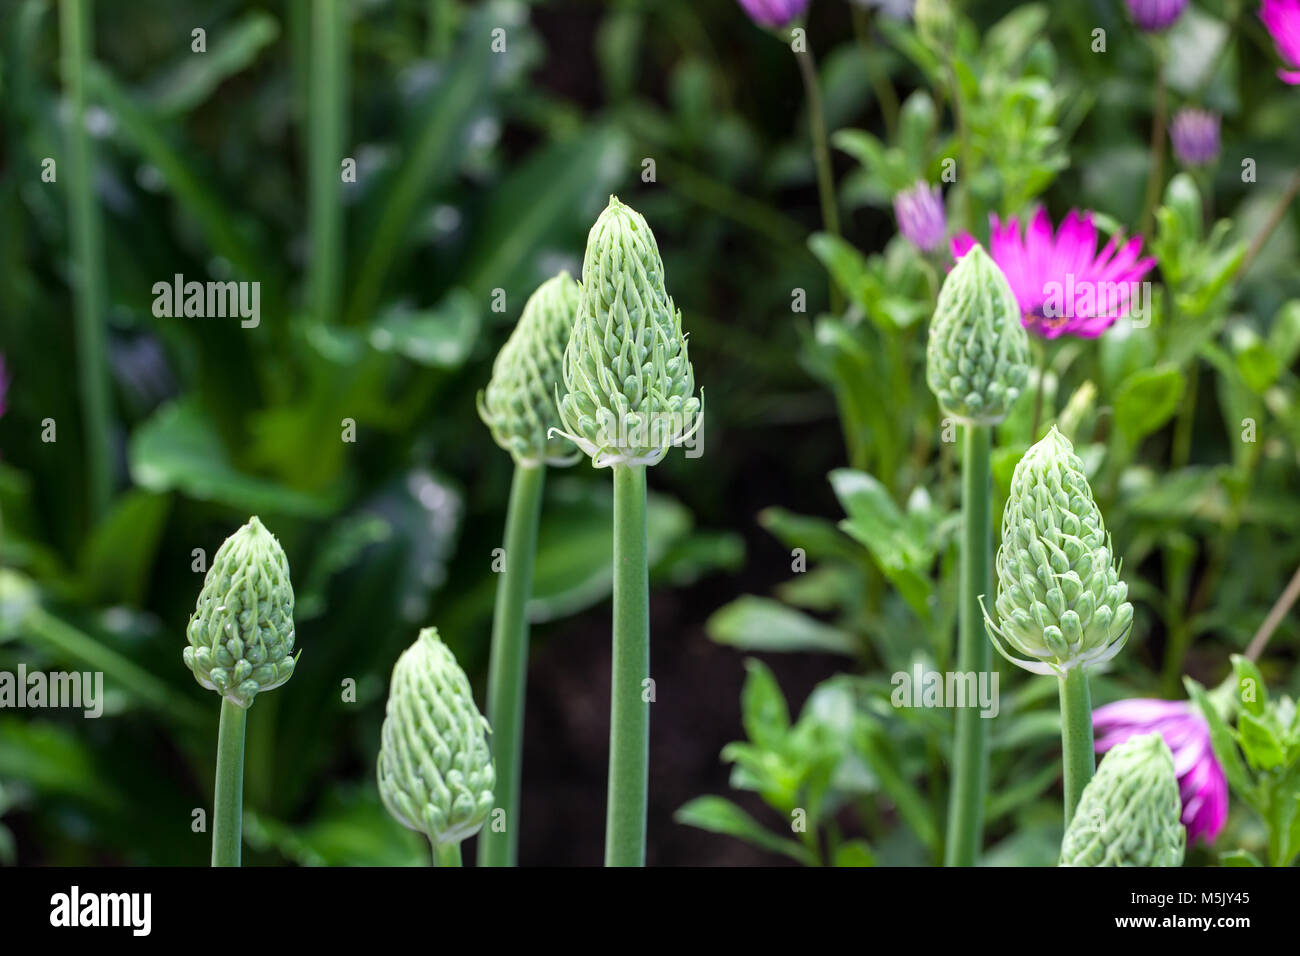 Forest Lily, Stor vinterraket (Veltheimia bracteata) Stock Photo